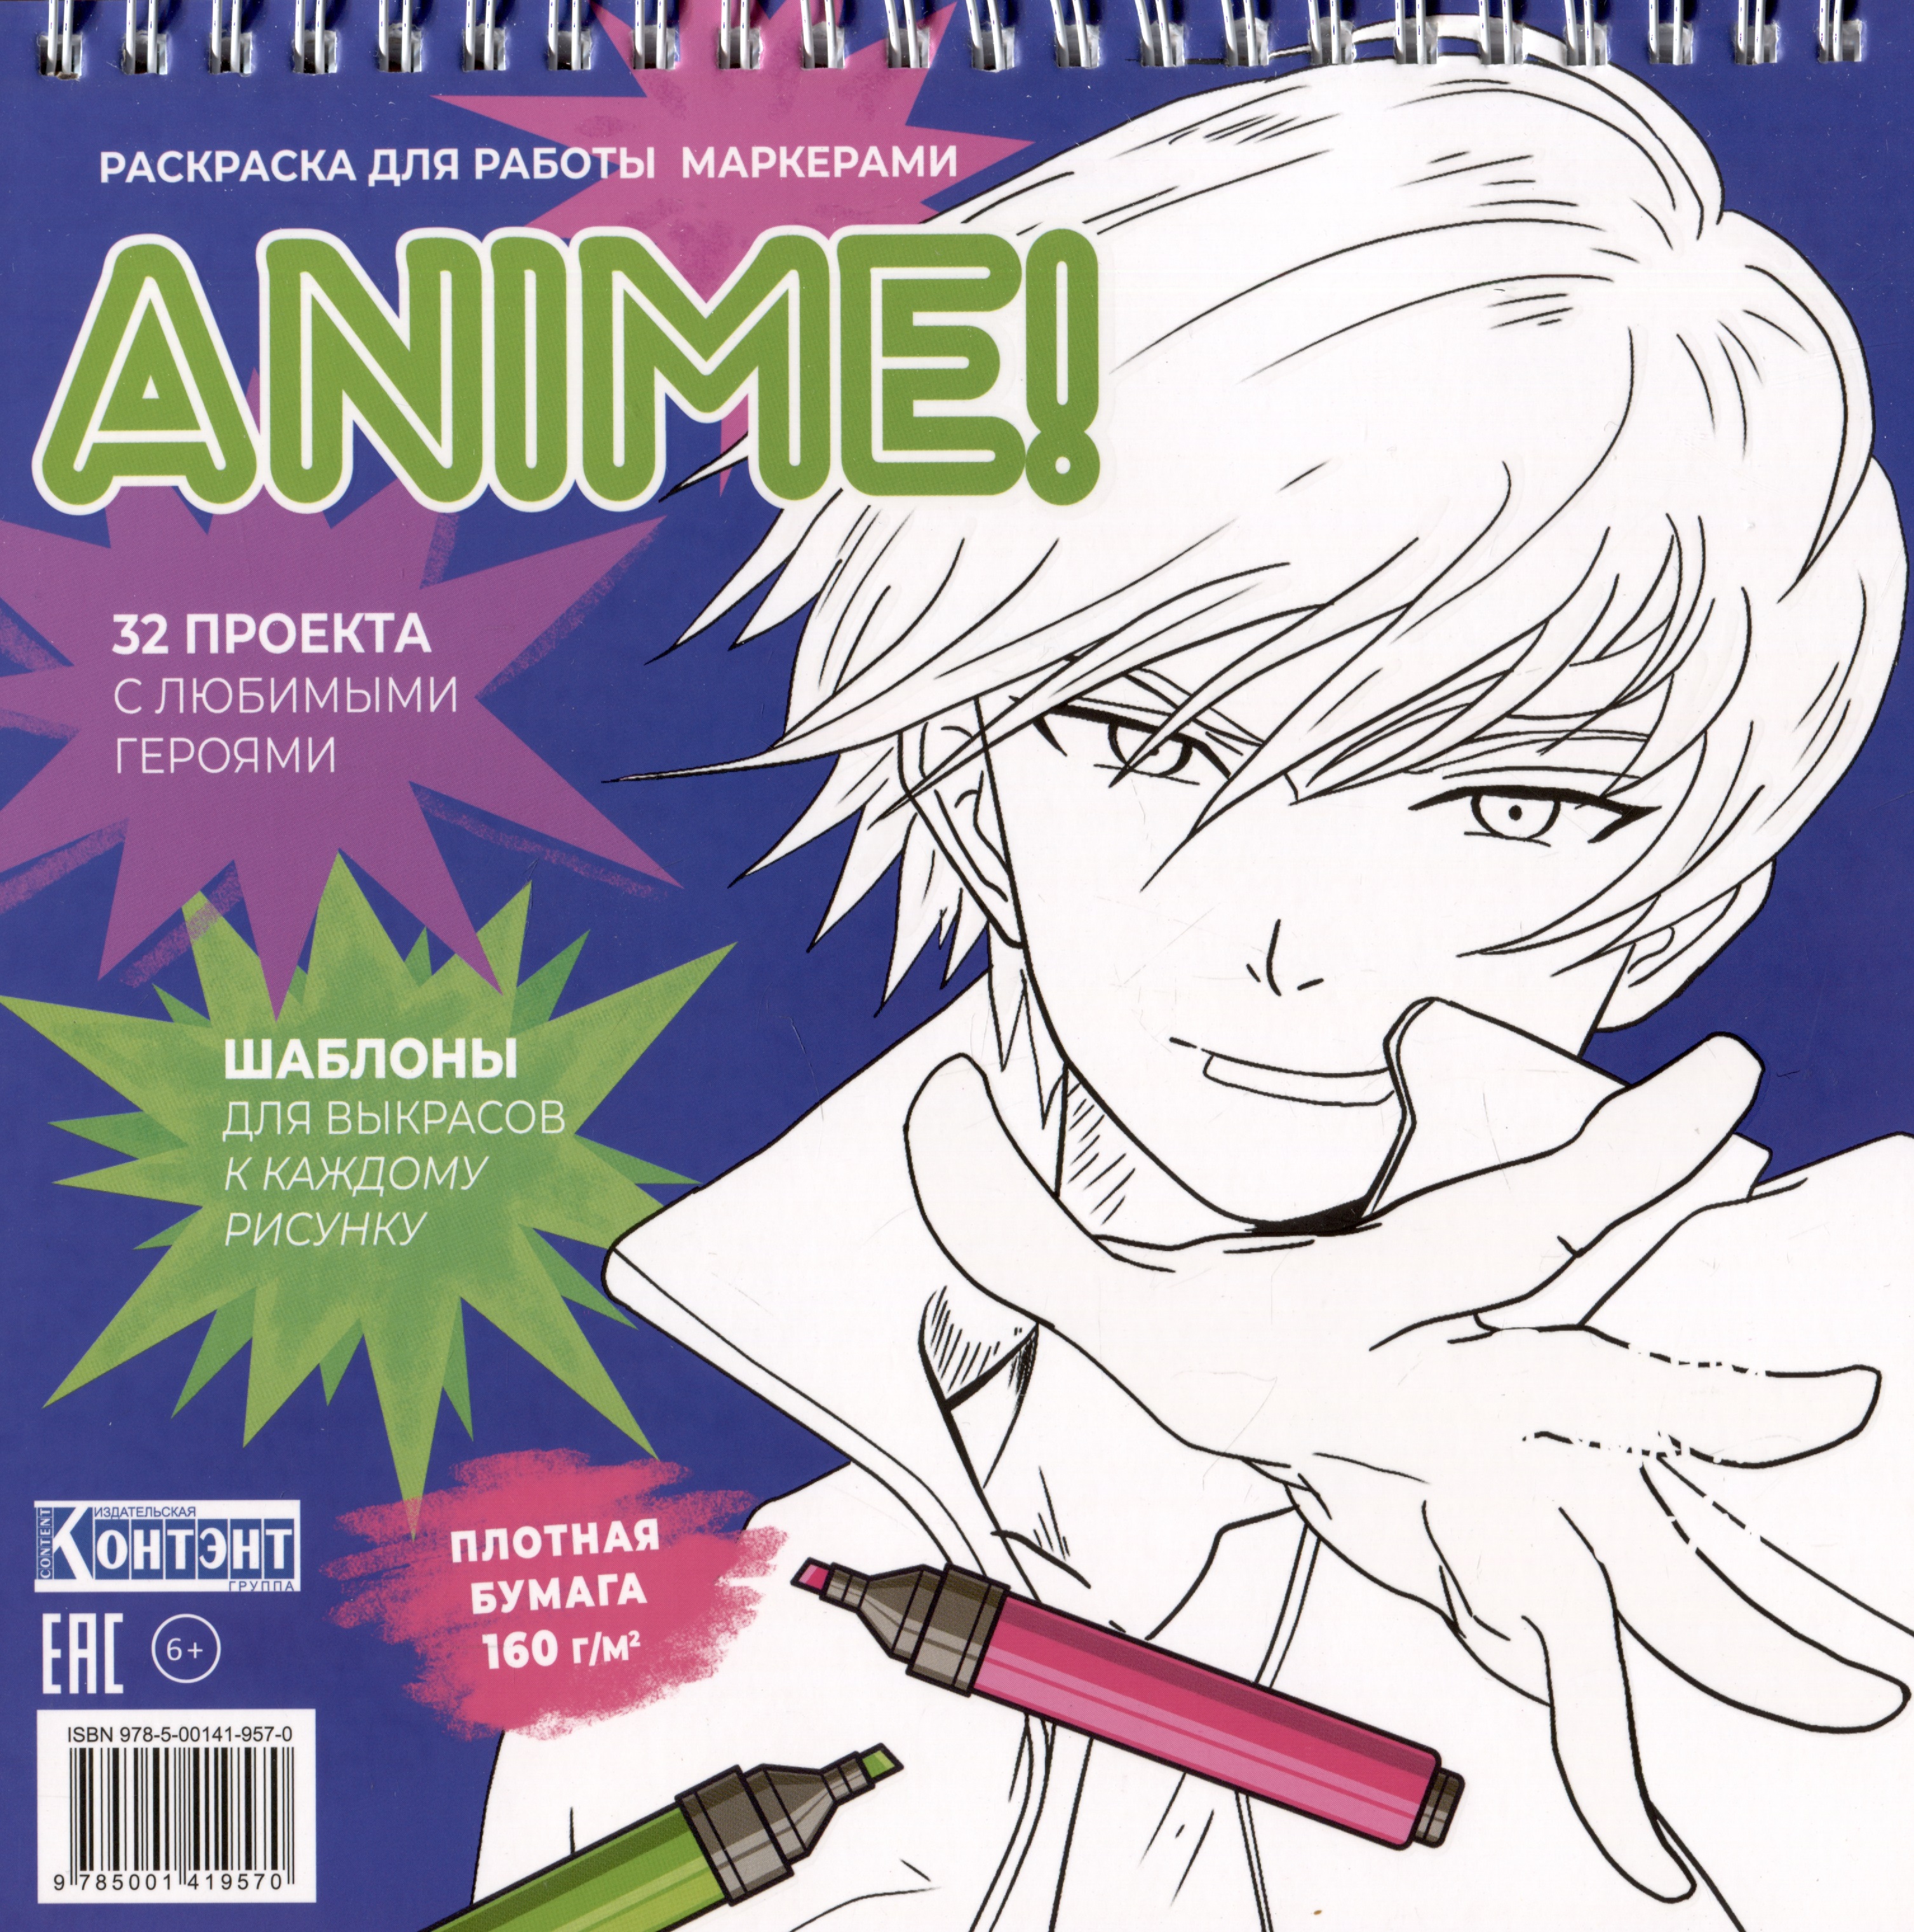 Anime! Раскраска для работы маркерами: 32 проекта с любимыми героями: Шаблоны для выкрасов к каждому рисунку